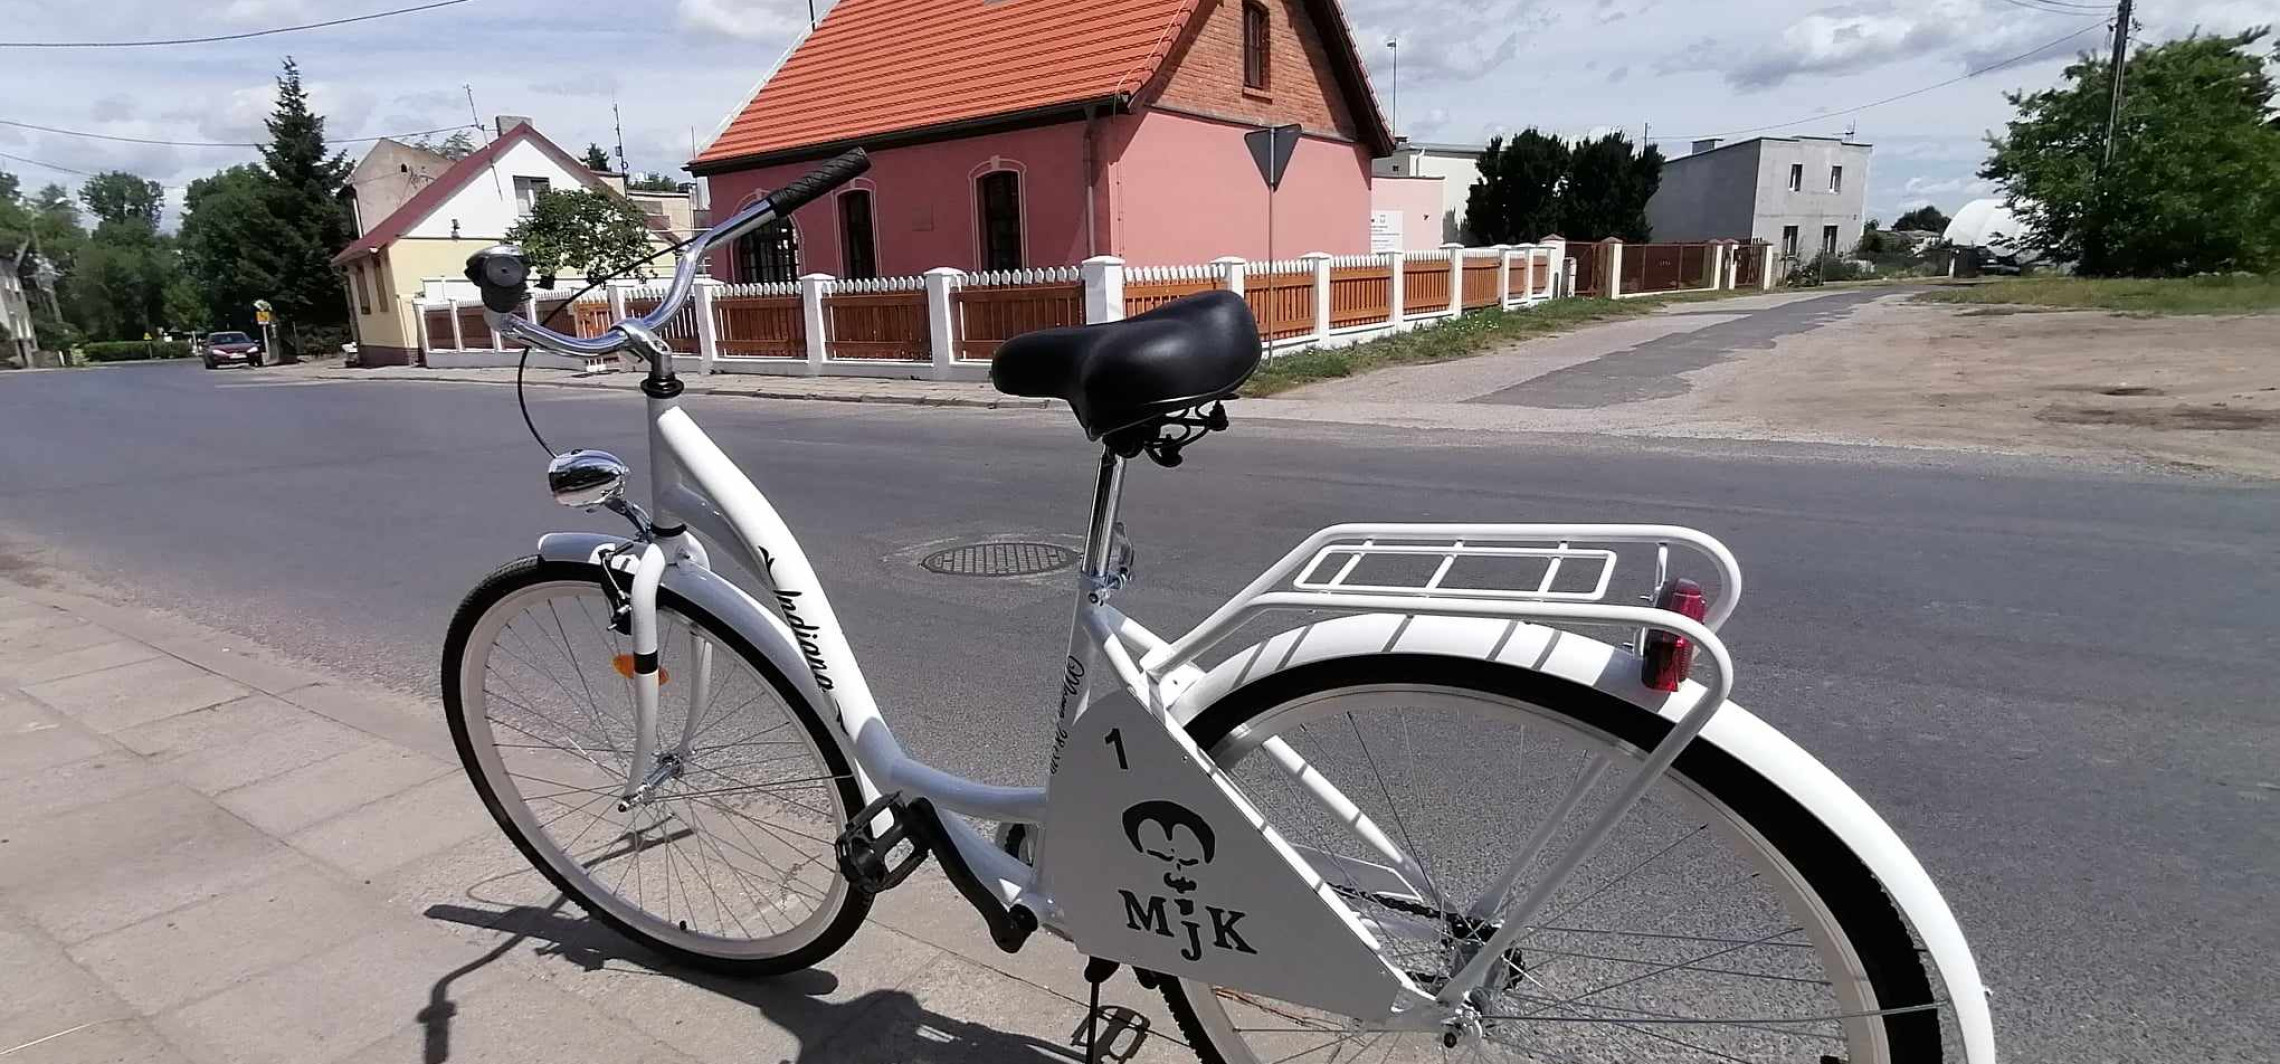 Inowrocław - To nie eksponat. Można wypożyczyć rower z muzeum